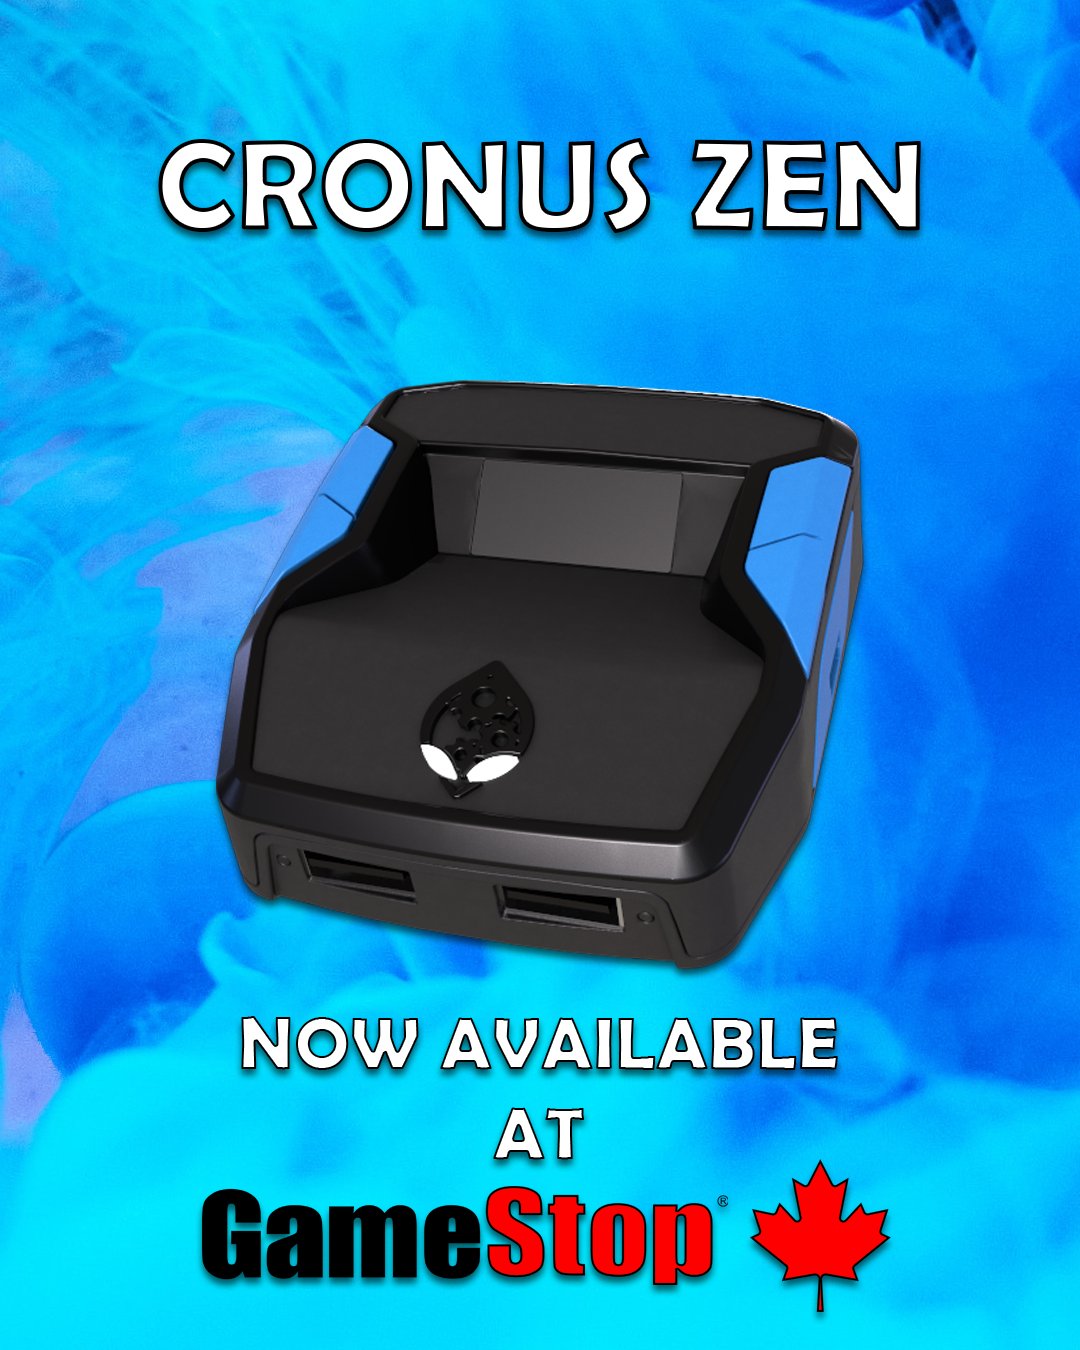 CRONUS ZEN – THE CRONUS SHOP